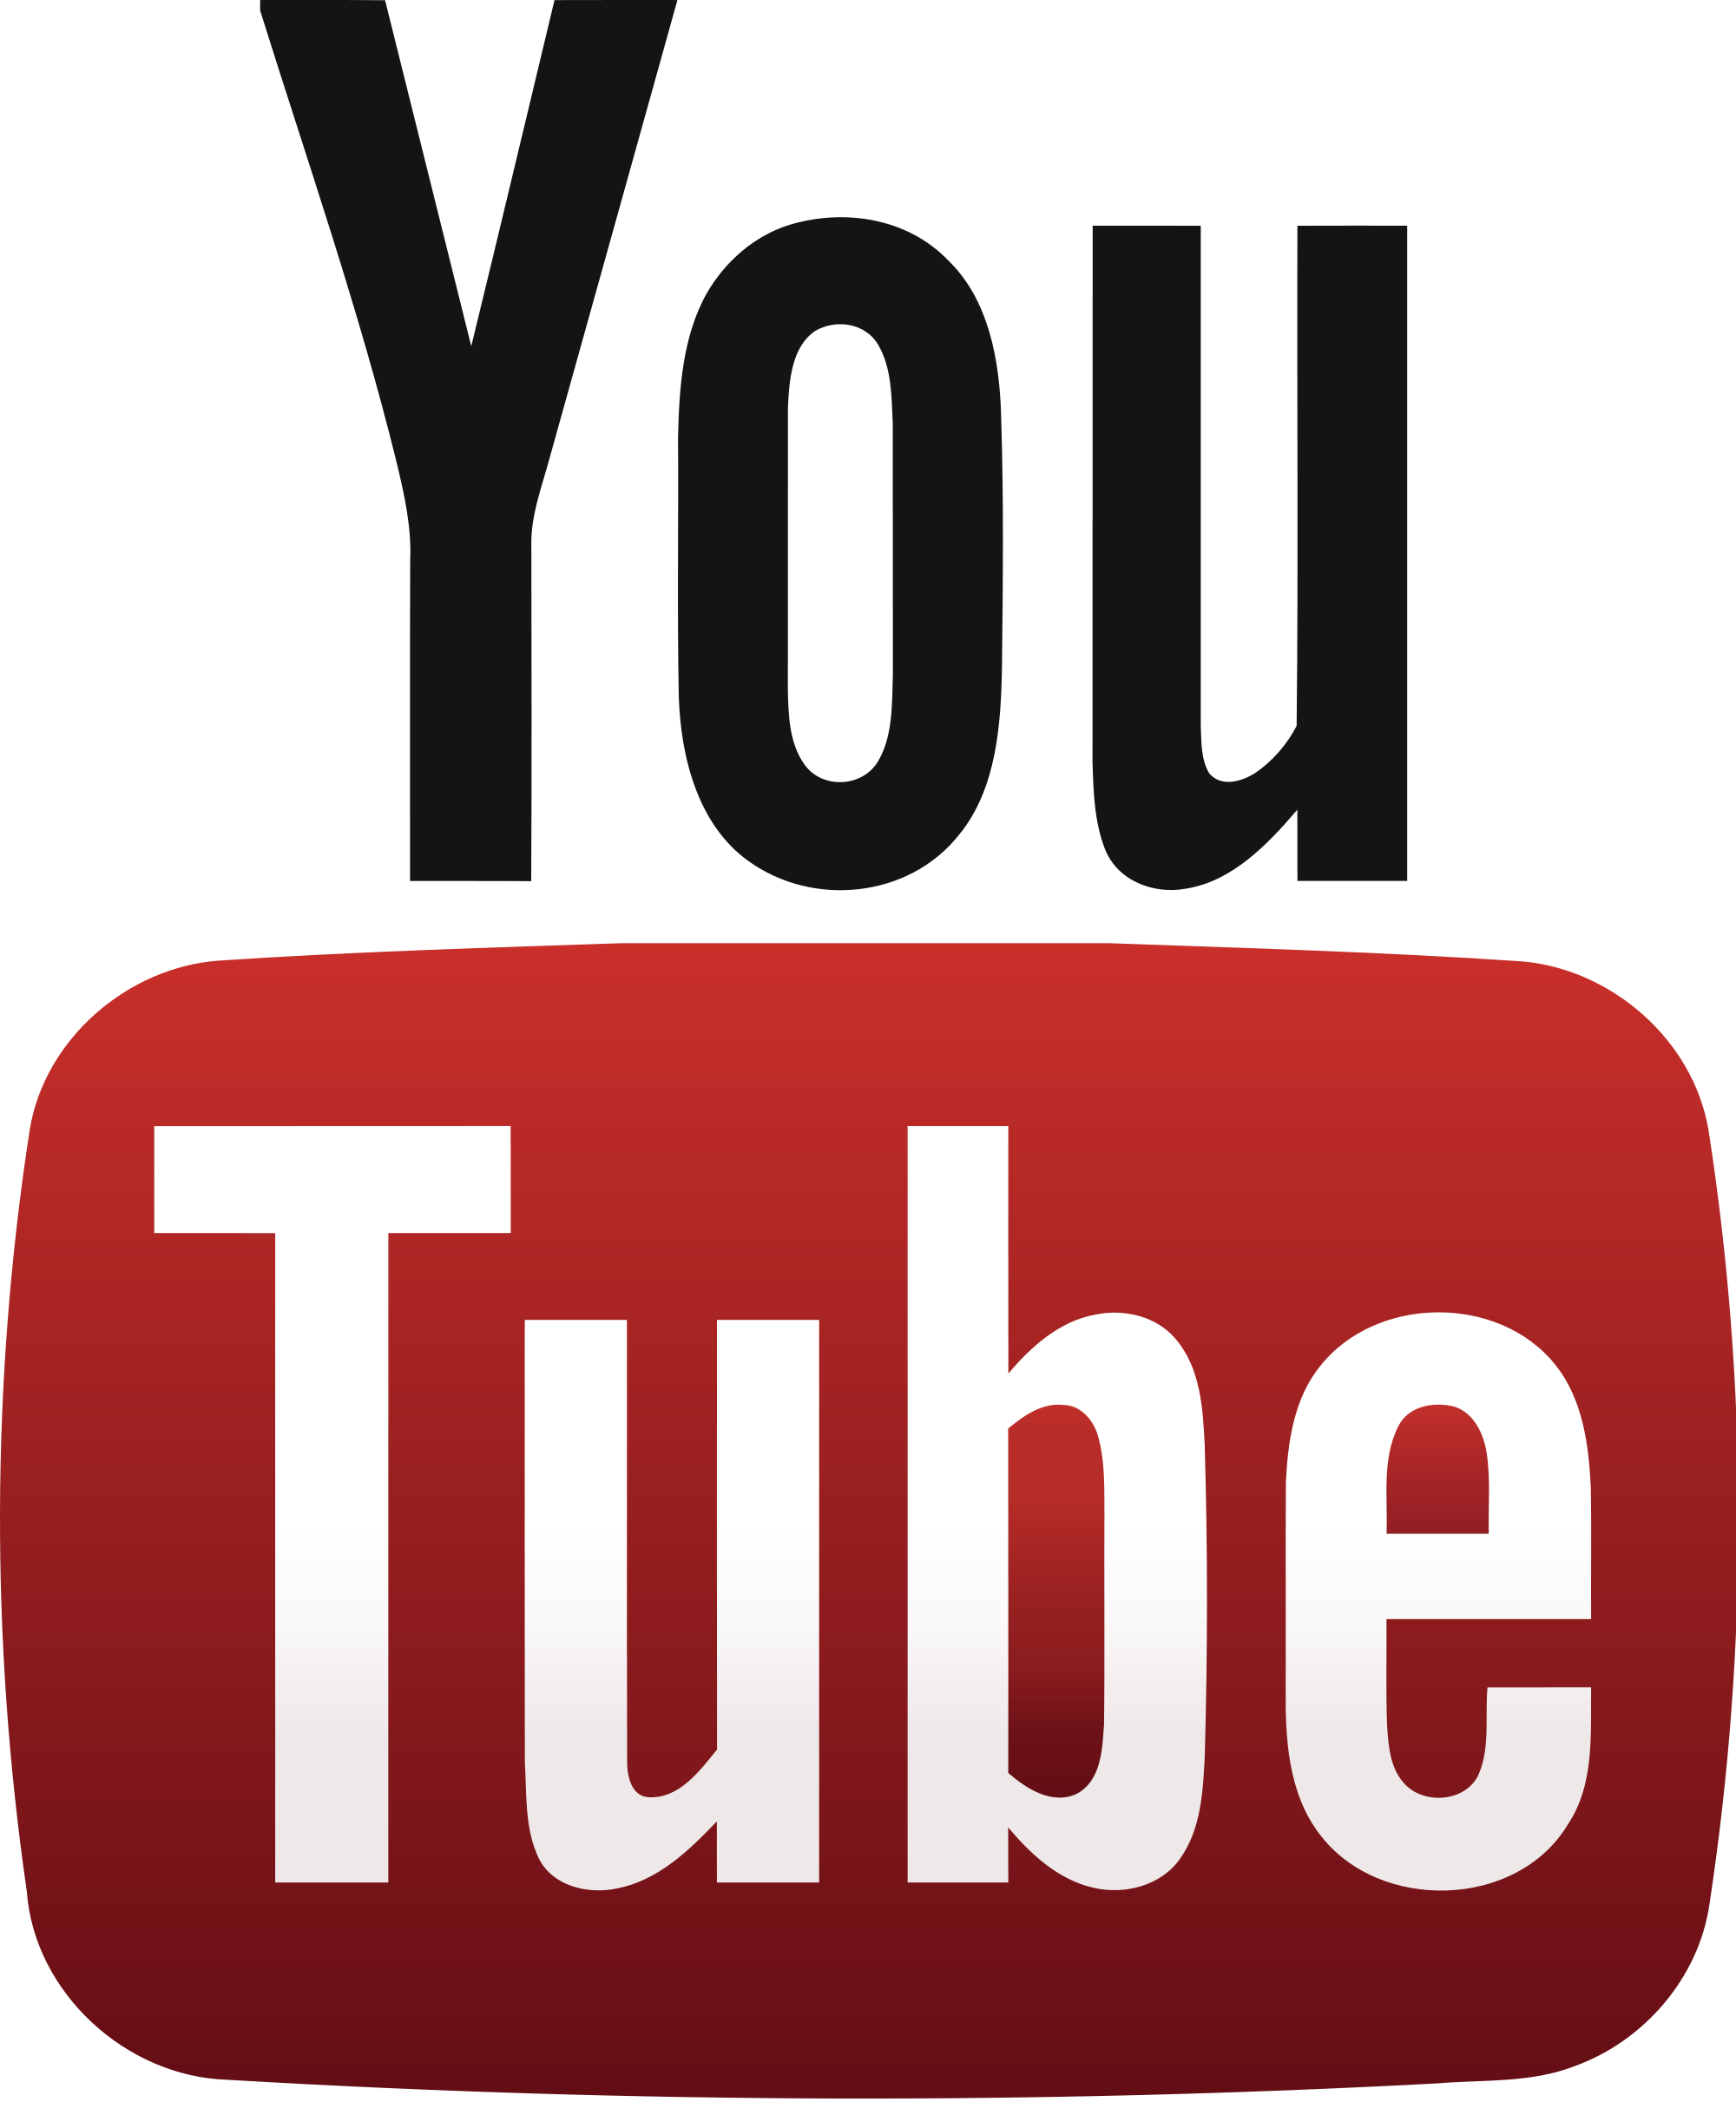 Youtube Logo Youtube Transparent Background Png Download 2000 2421 Free Transparent Youtube Png Download Clip Art Library